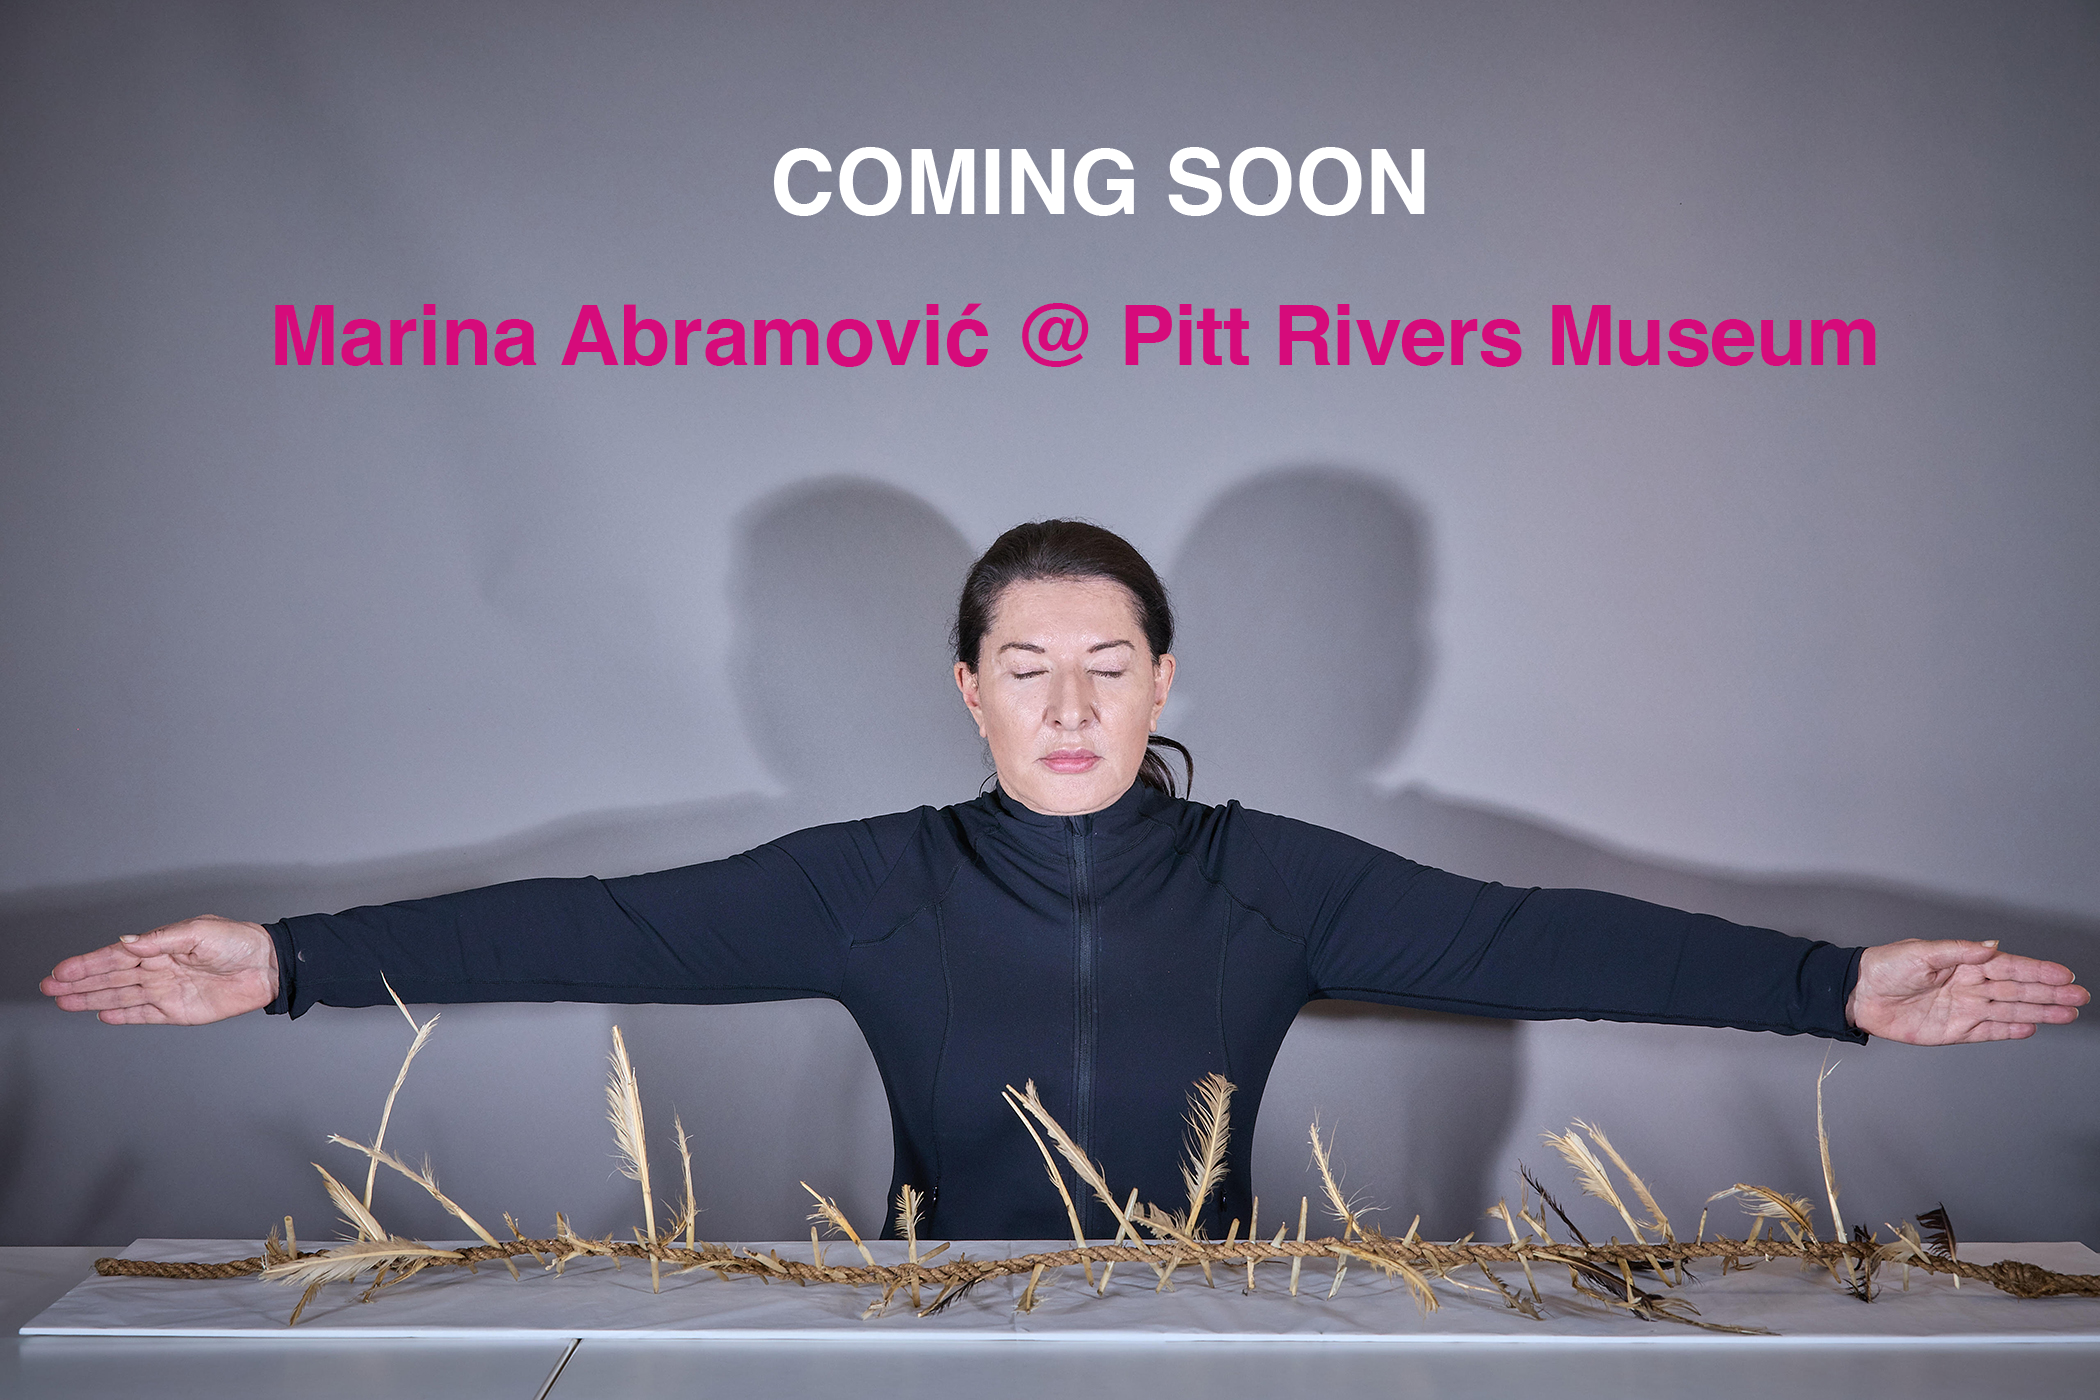 Coming soon... Marina Abramovic at the Pitt Rivers